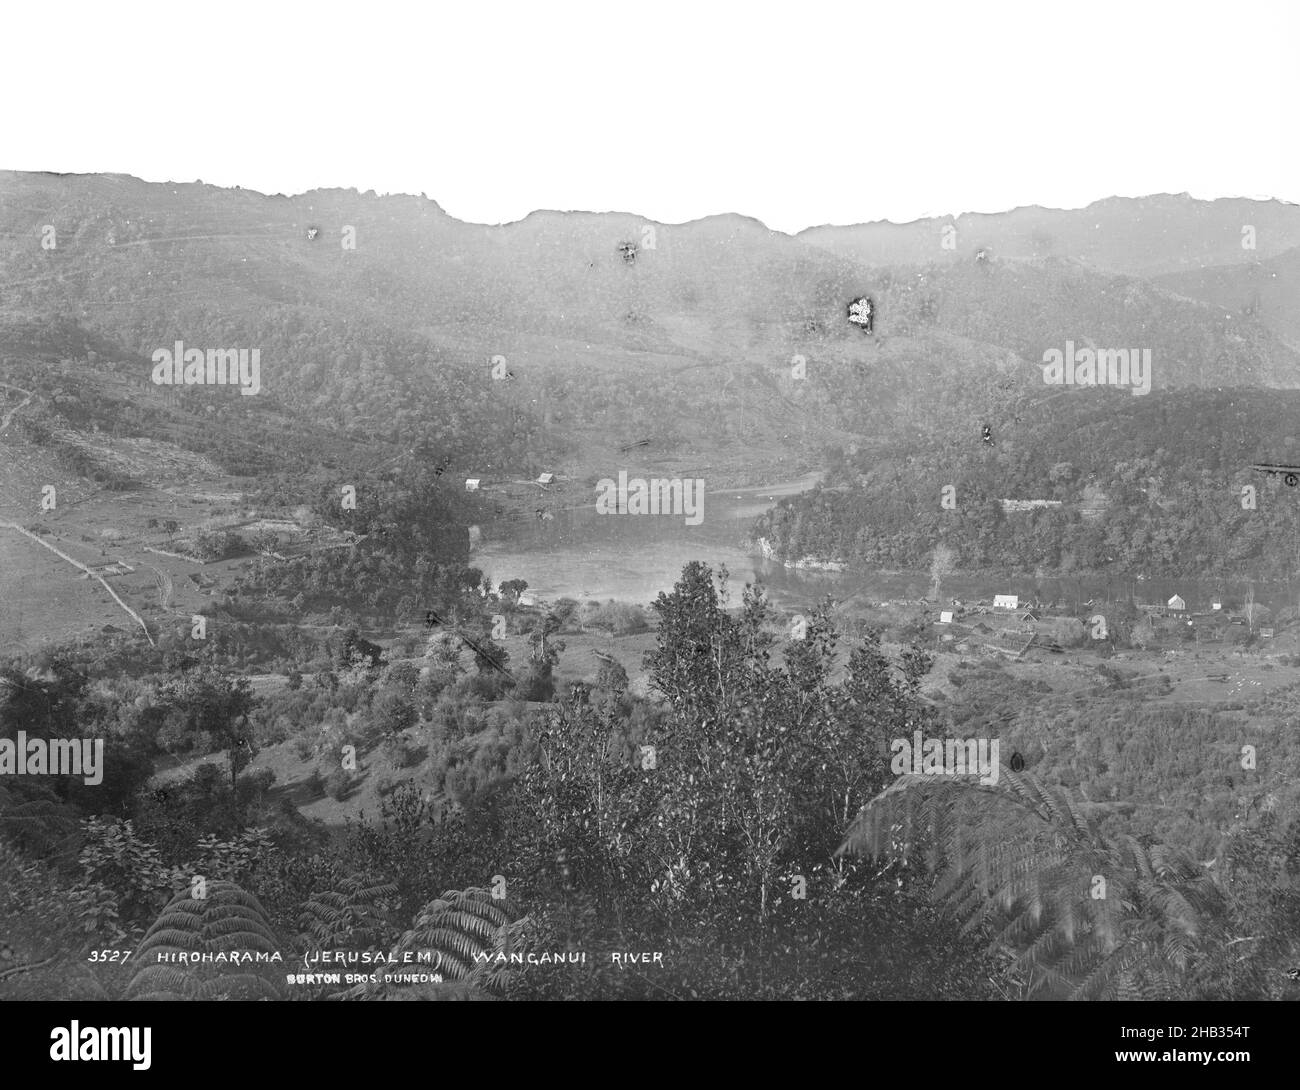 Hiroharama (Jerusalem) Wanganui River, Burton Brothers studio, studio de photographie, Nouvelle-Zélande, processus de plaque de gélatine sèche, vue d'en haut sur le Bush à la rivière Whanganui et aux collines au-delà Banque D'Images